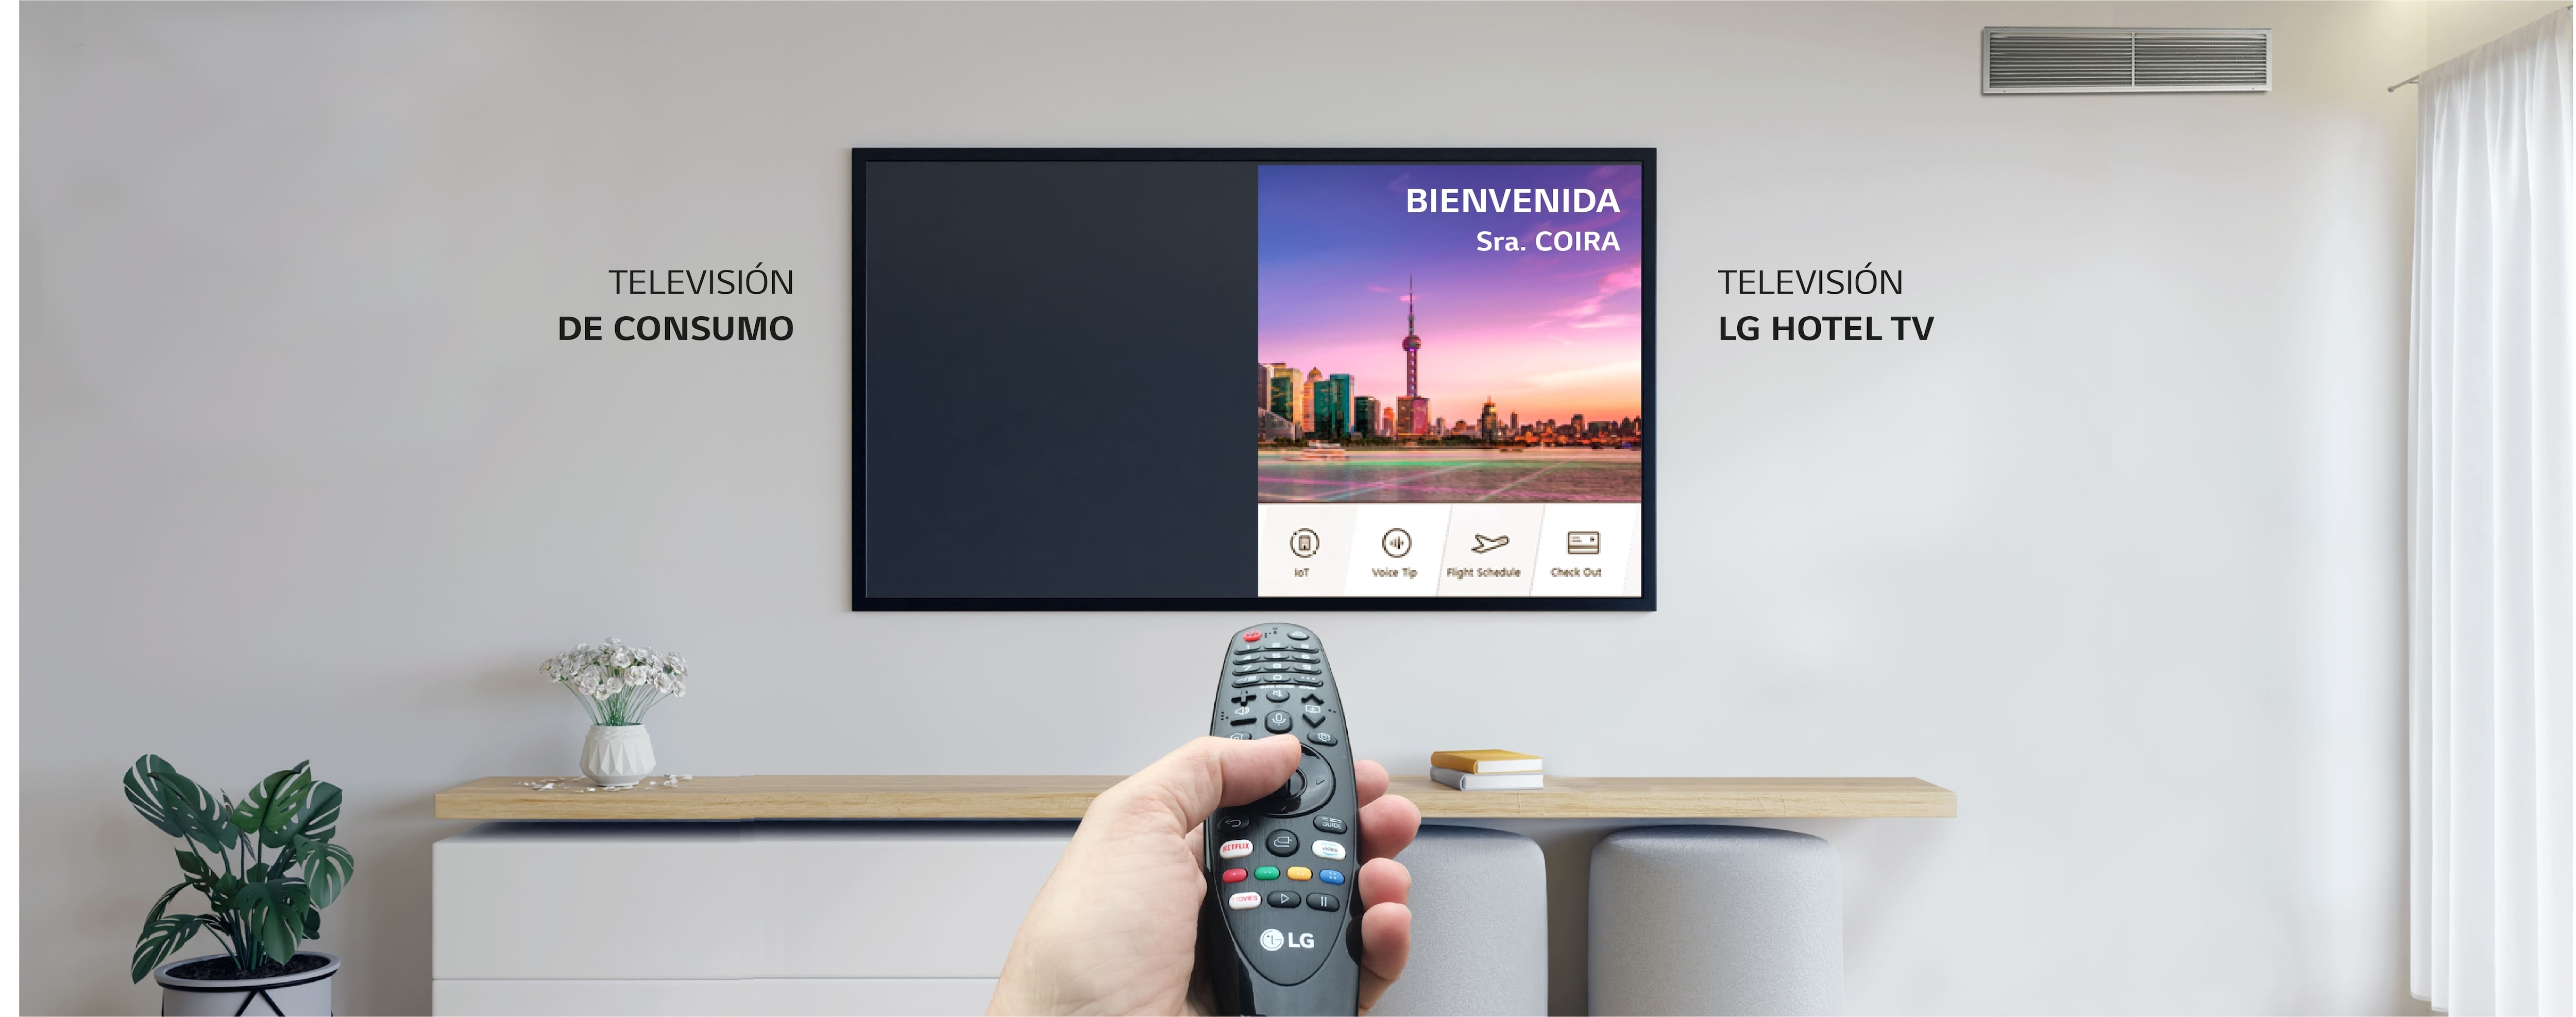 Diferencias entre consumo de TV normal y TV profesional de LG